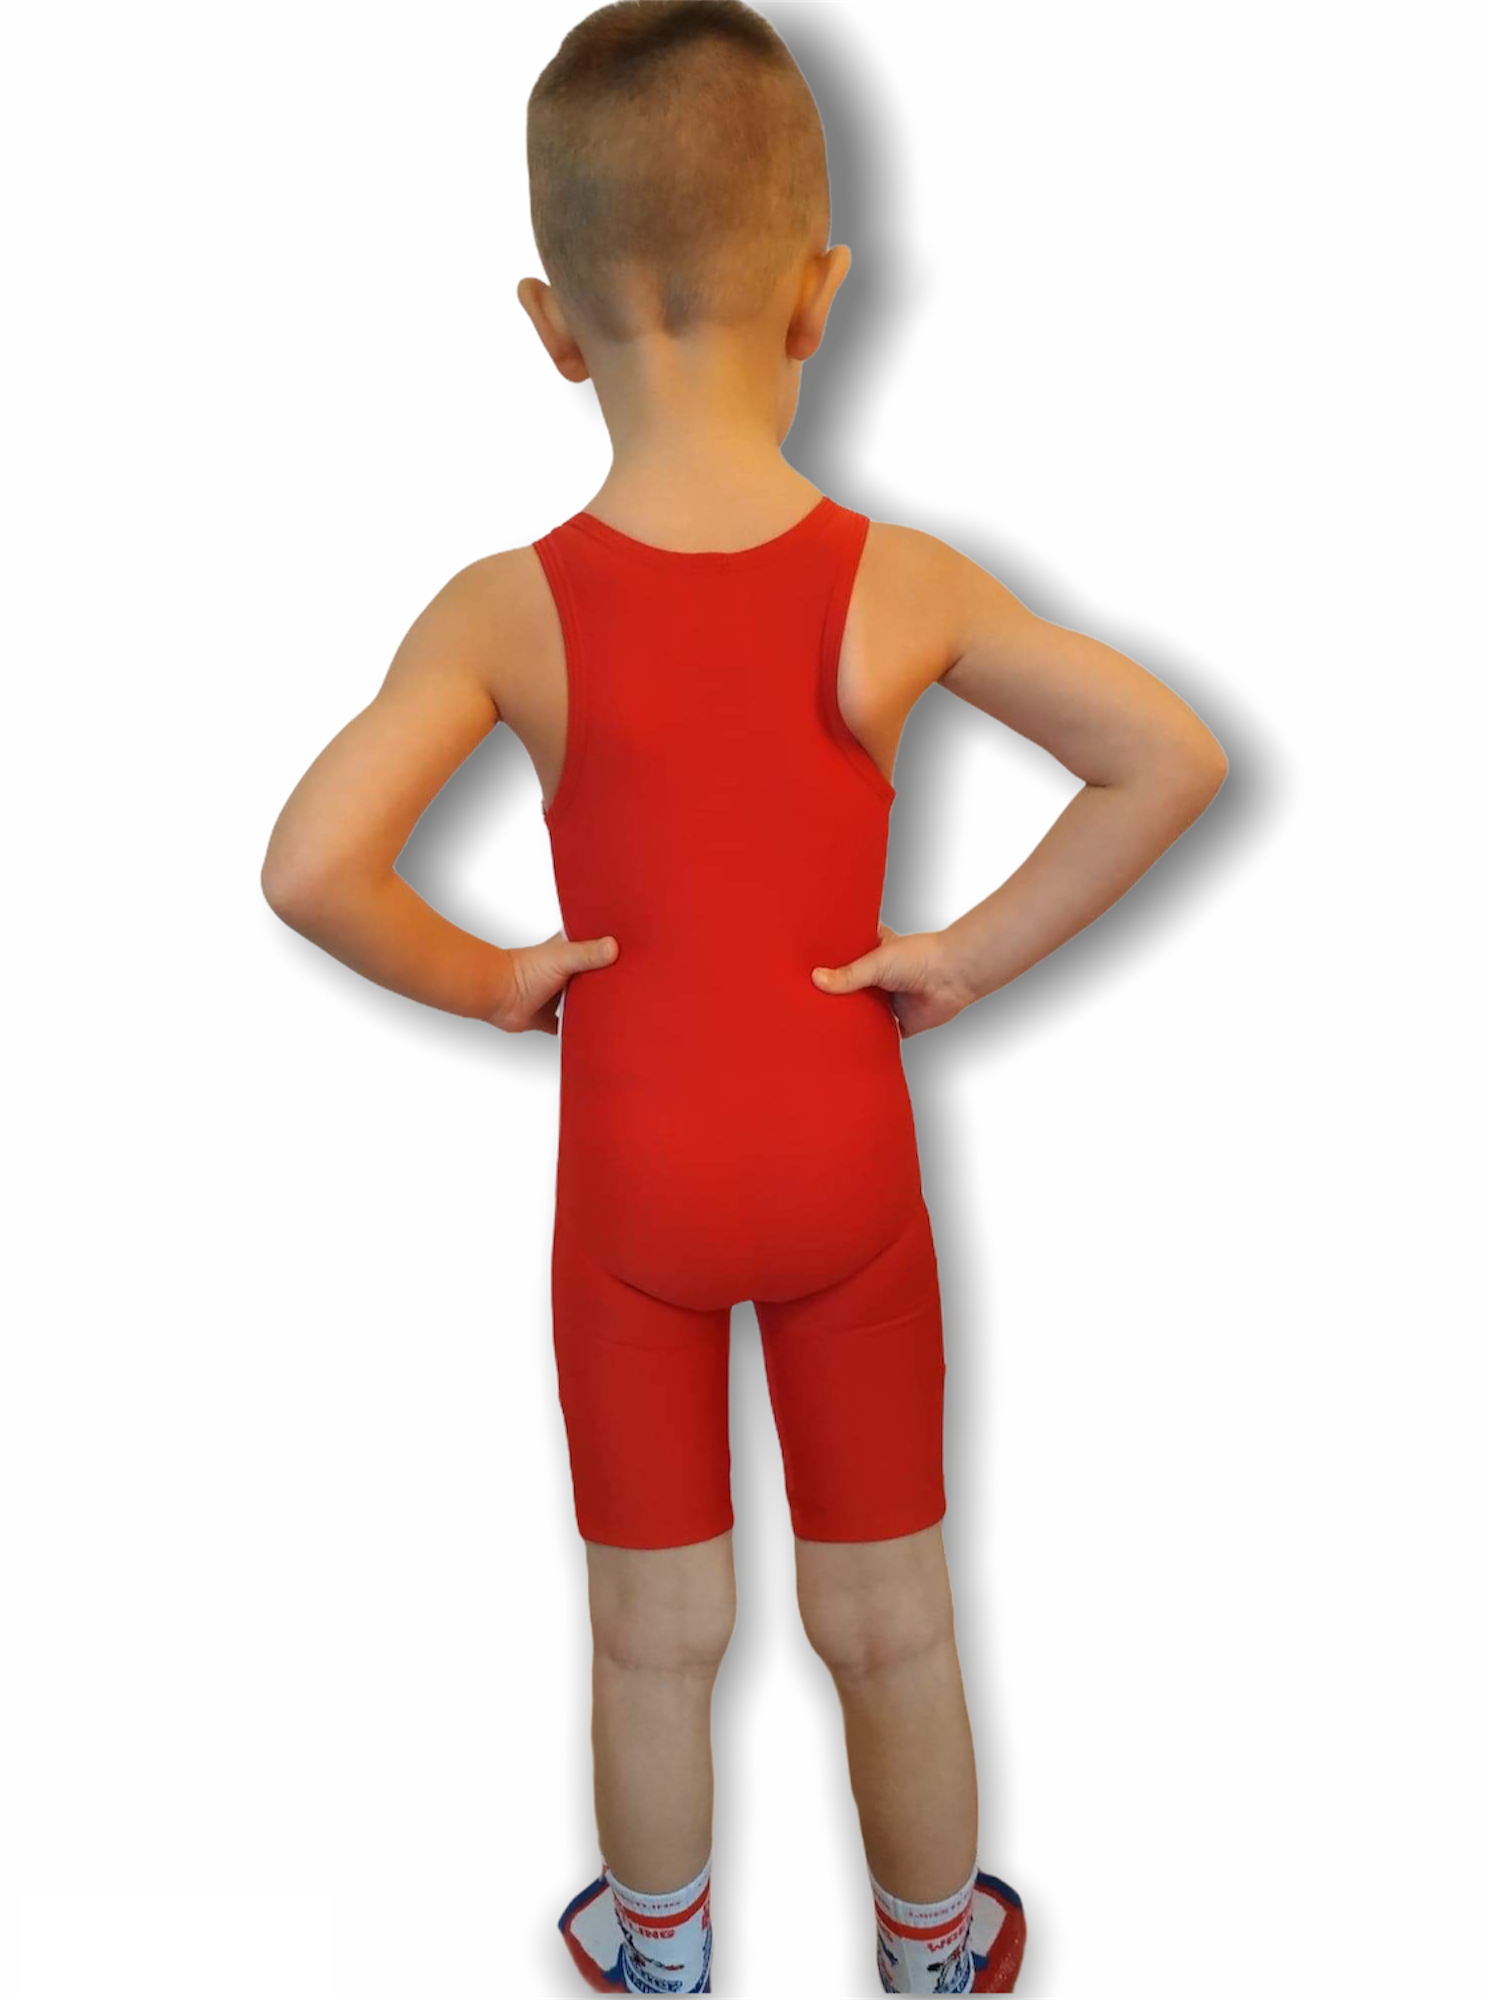 Kids Wrestling Singlets BERKNER KIDS PACK Wrestling Suit Red and Blue Set 